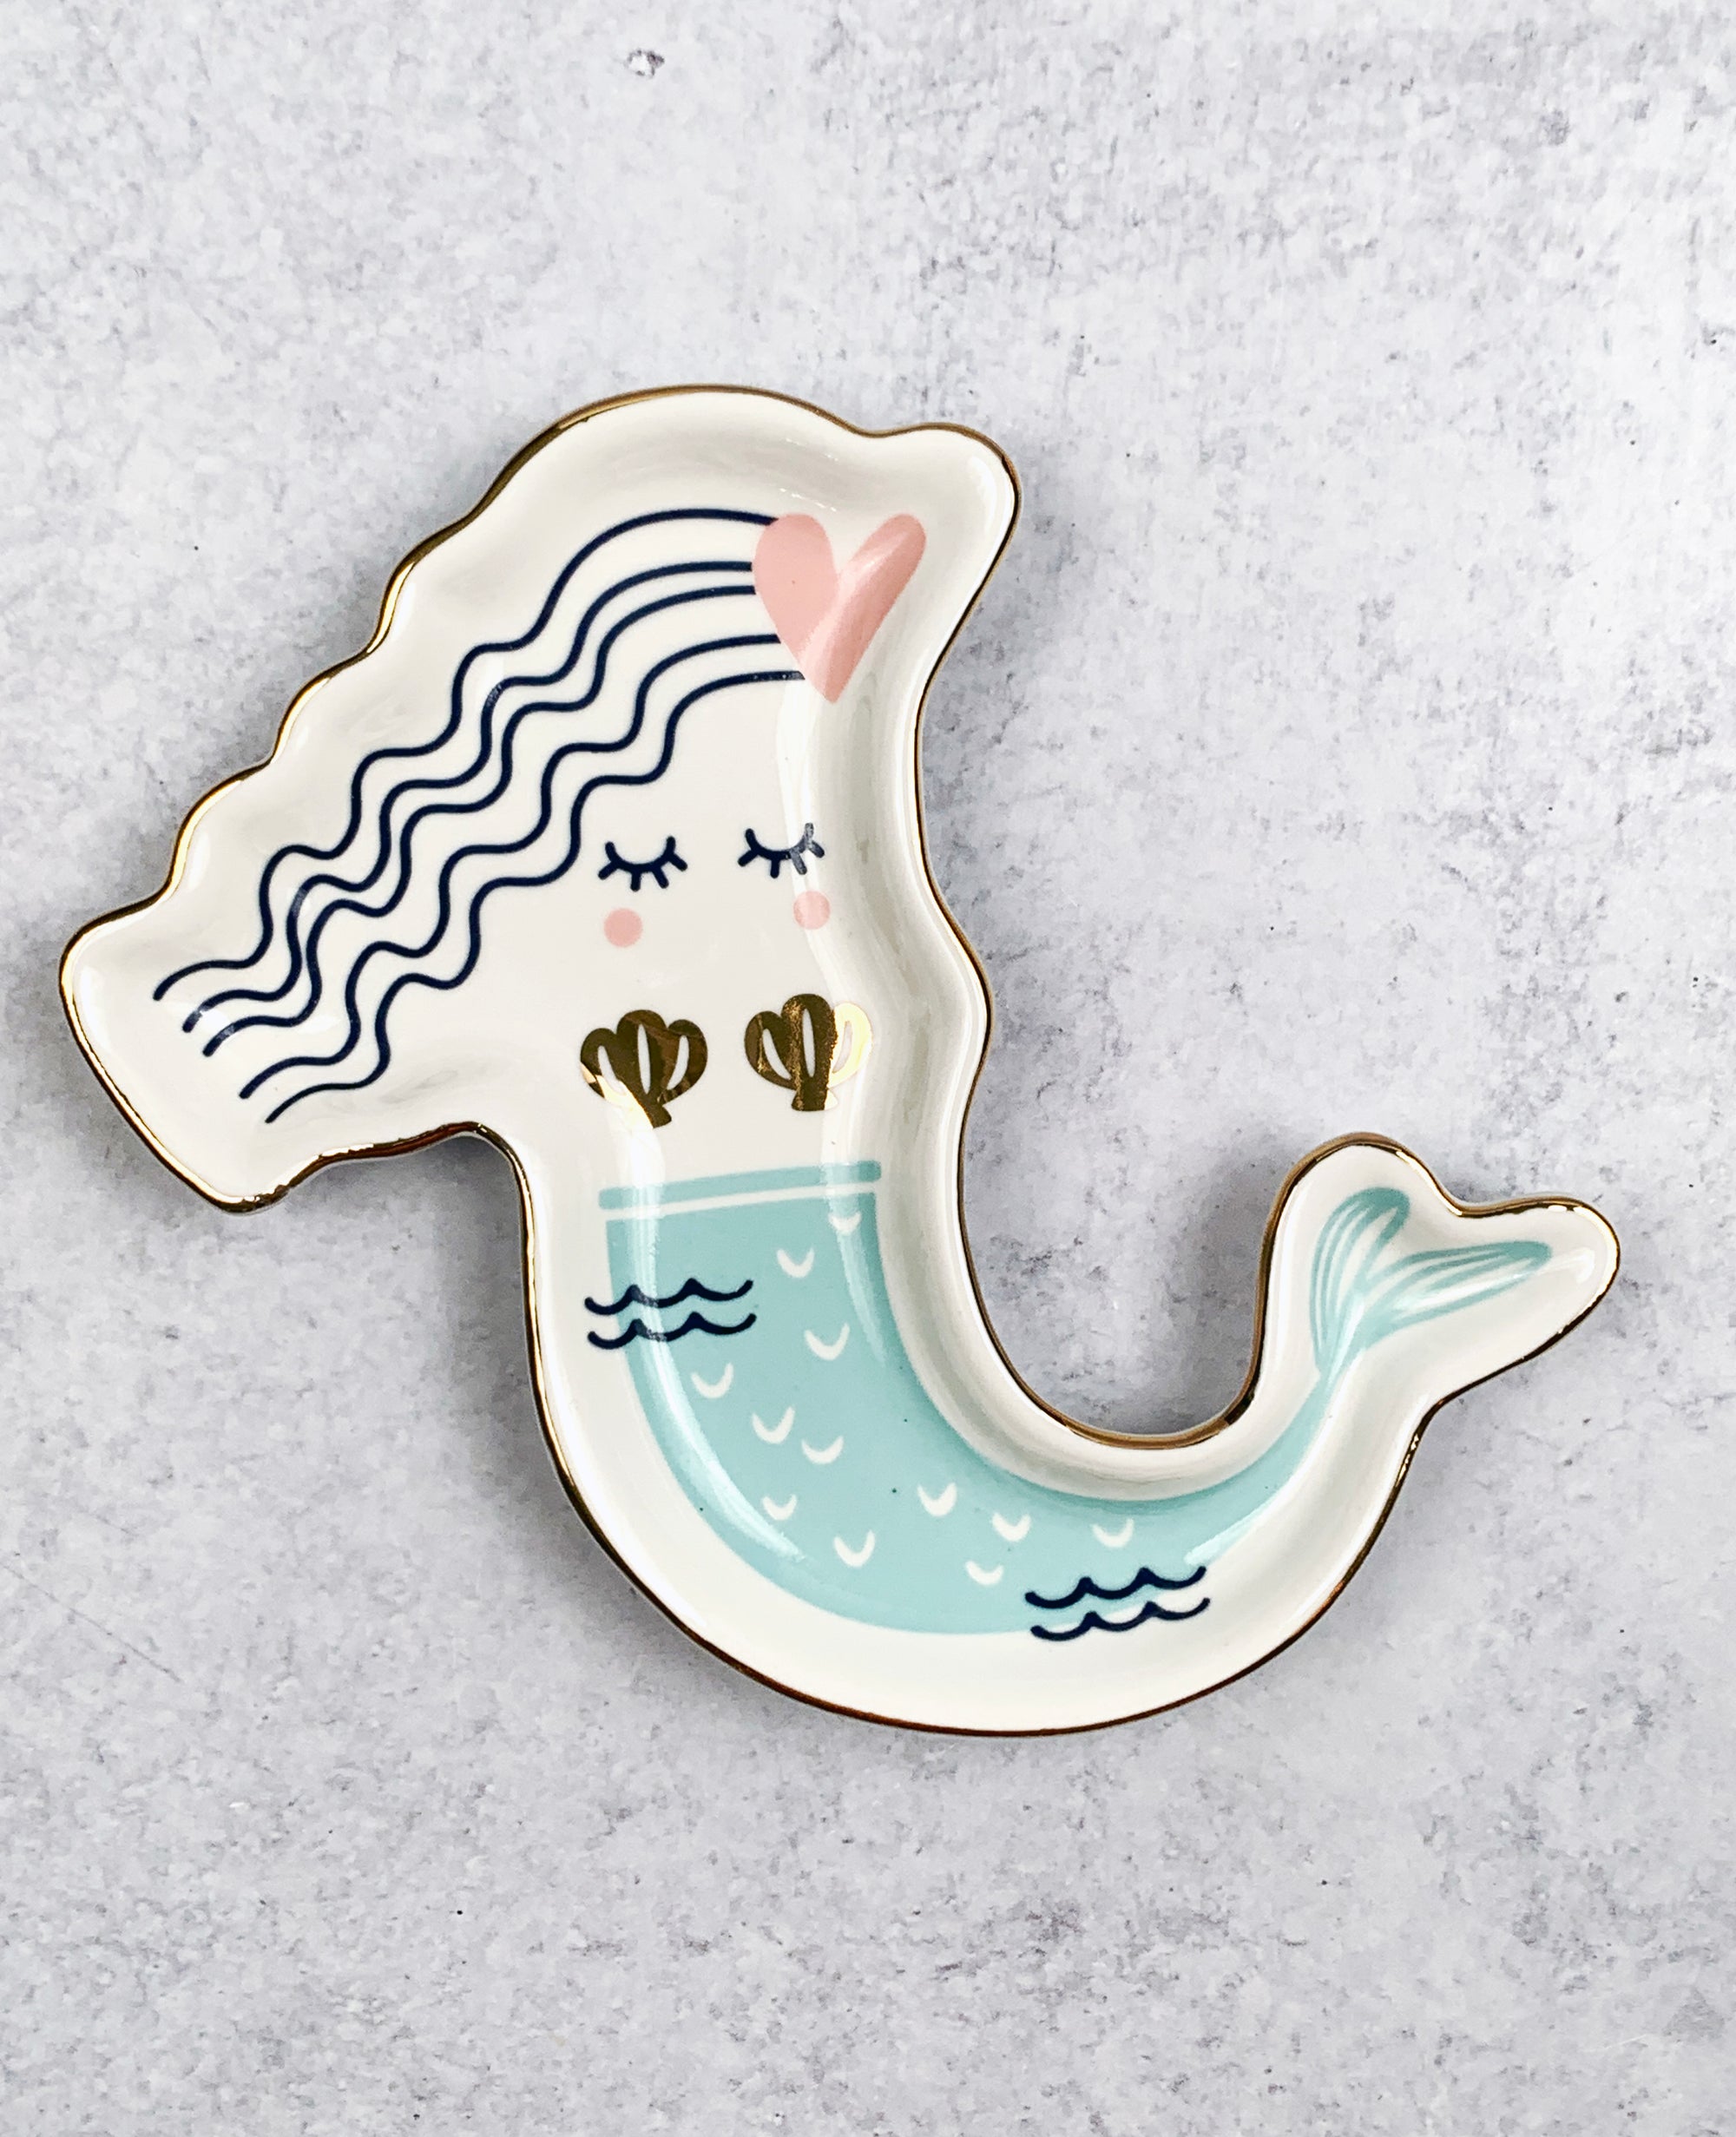 Mermaid Ceramic Tray